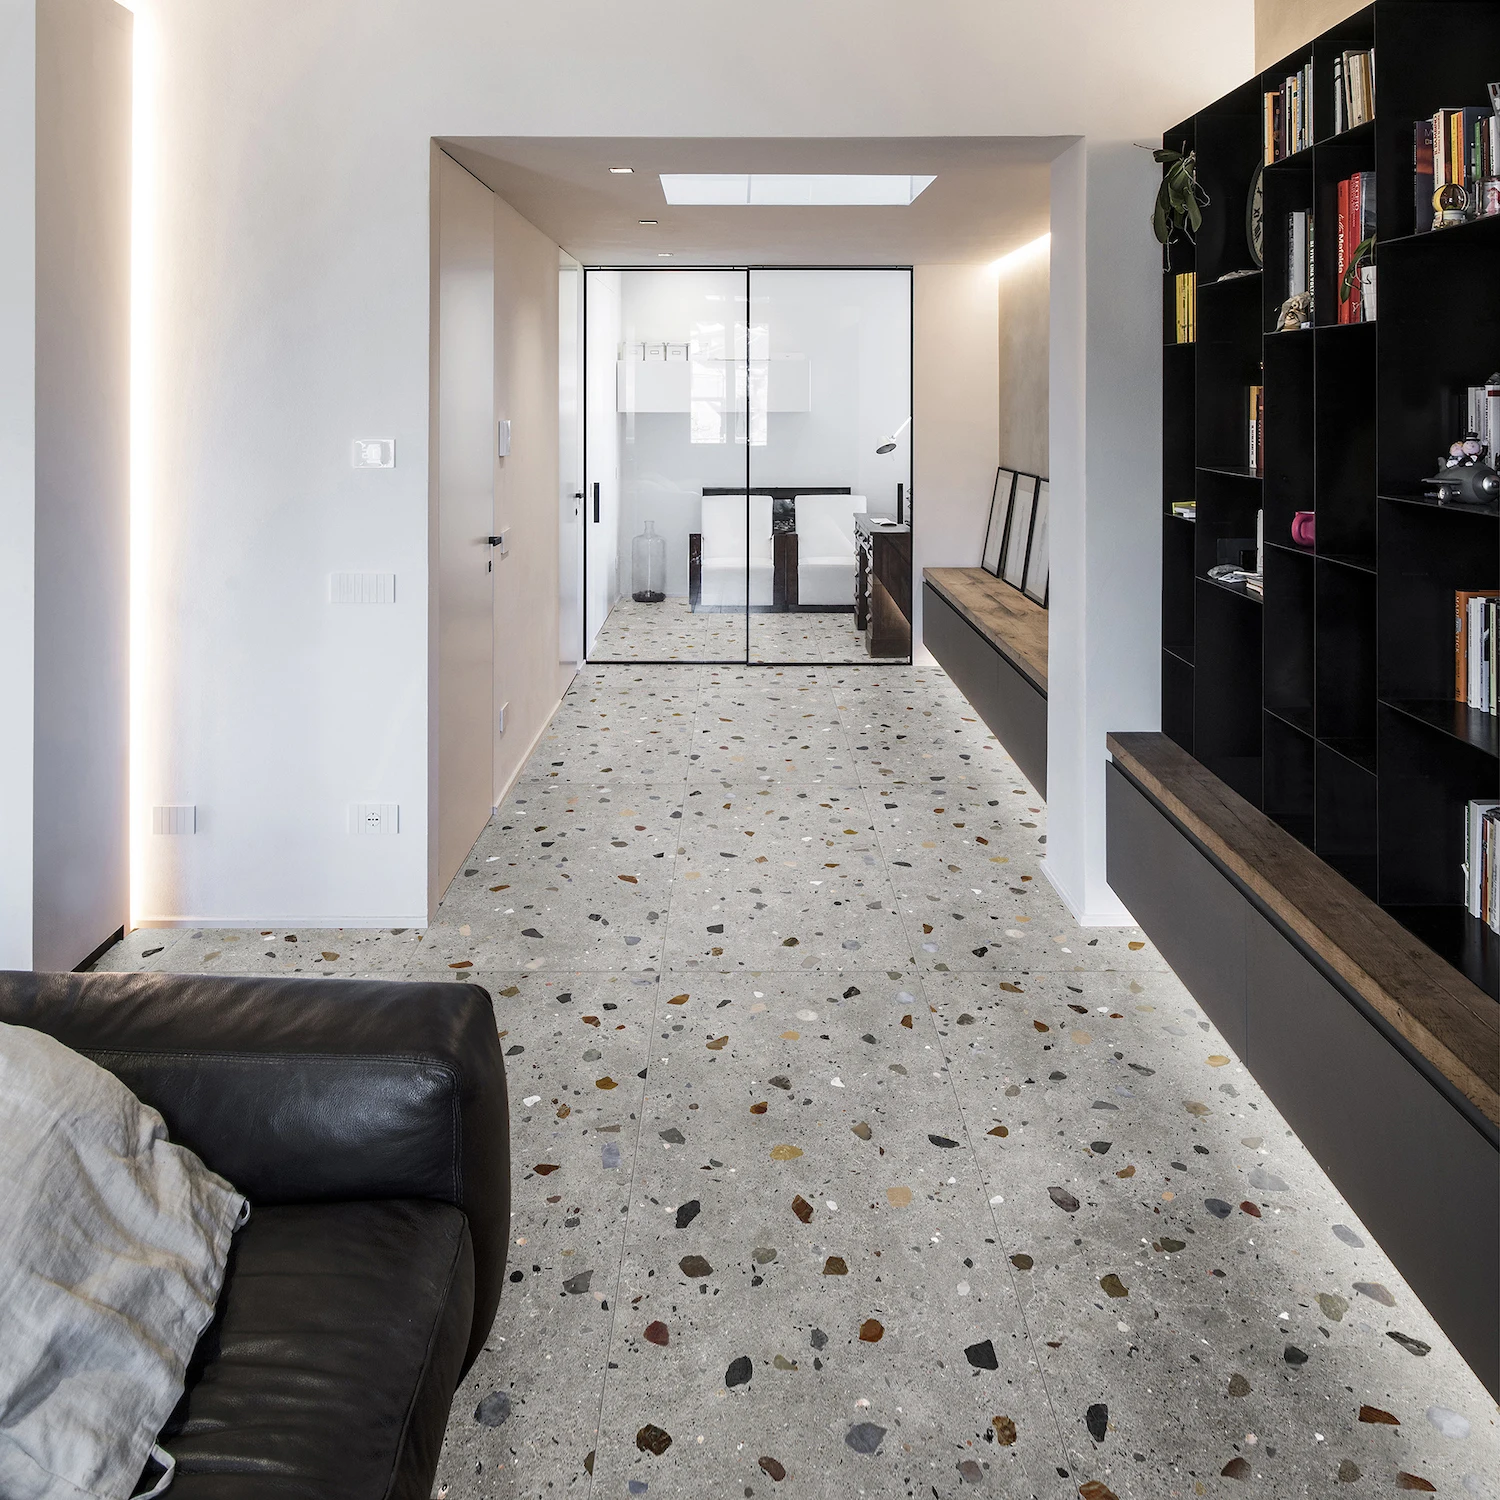 Terrazzo Flooring Materials Floor Tile Outdoor Terrazzo Tile Latest Design 2020